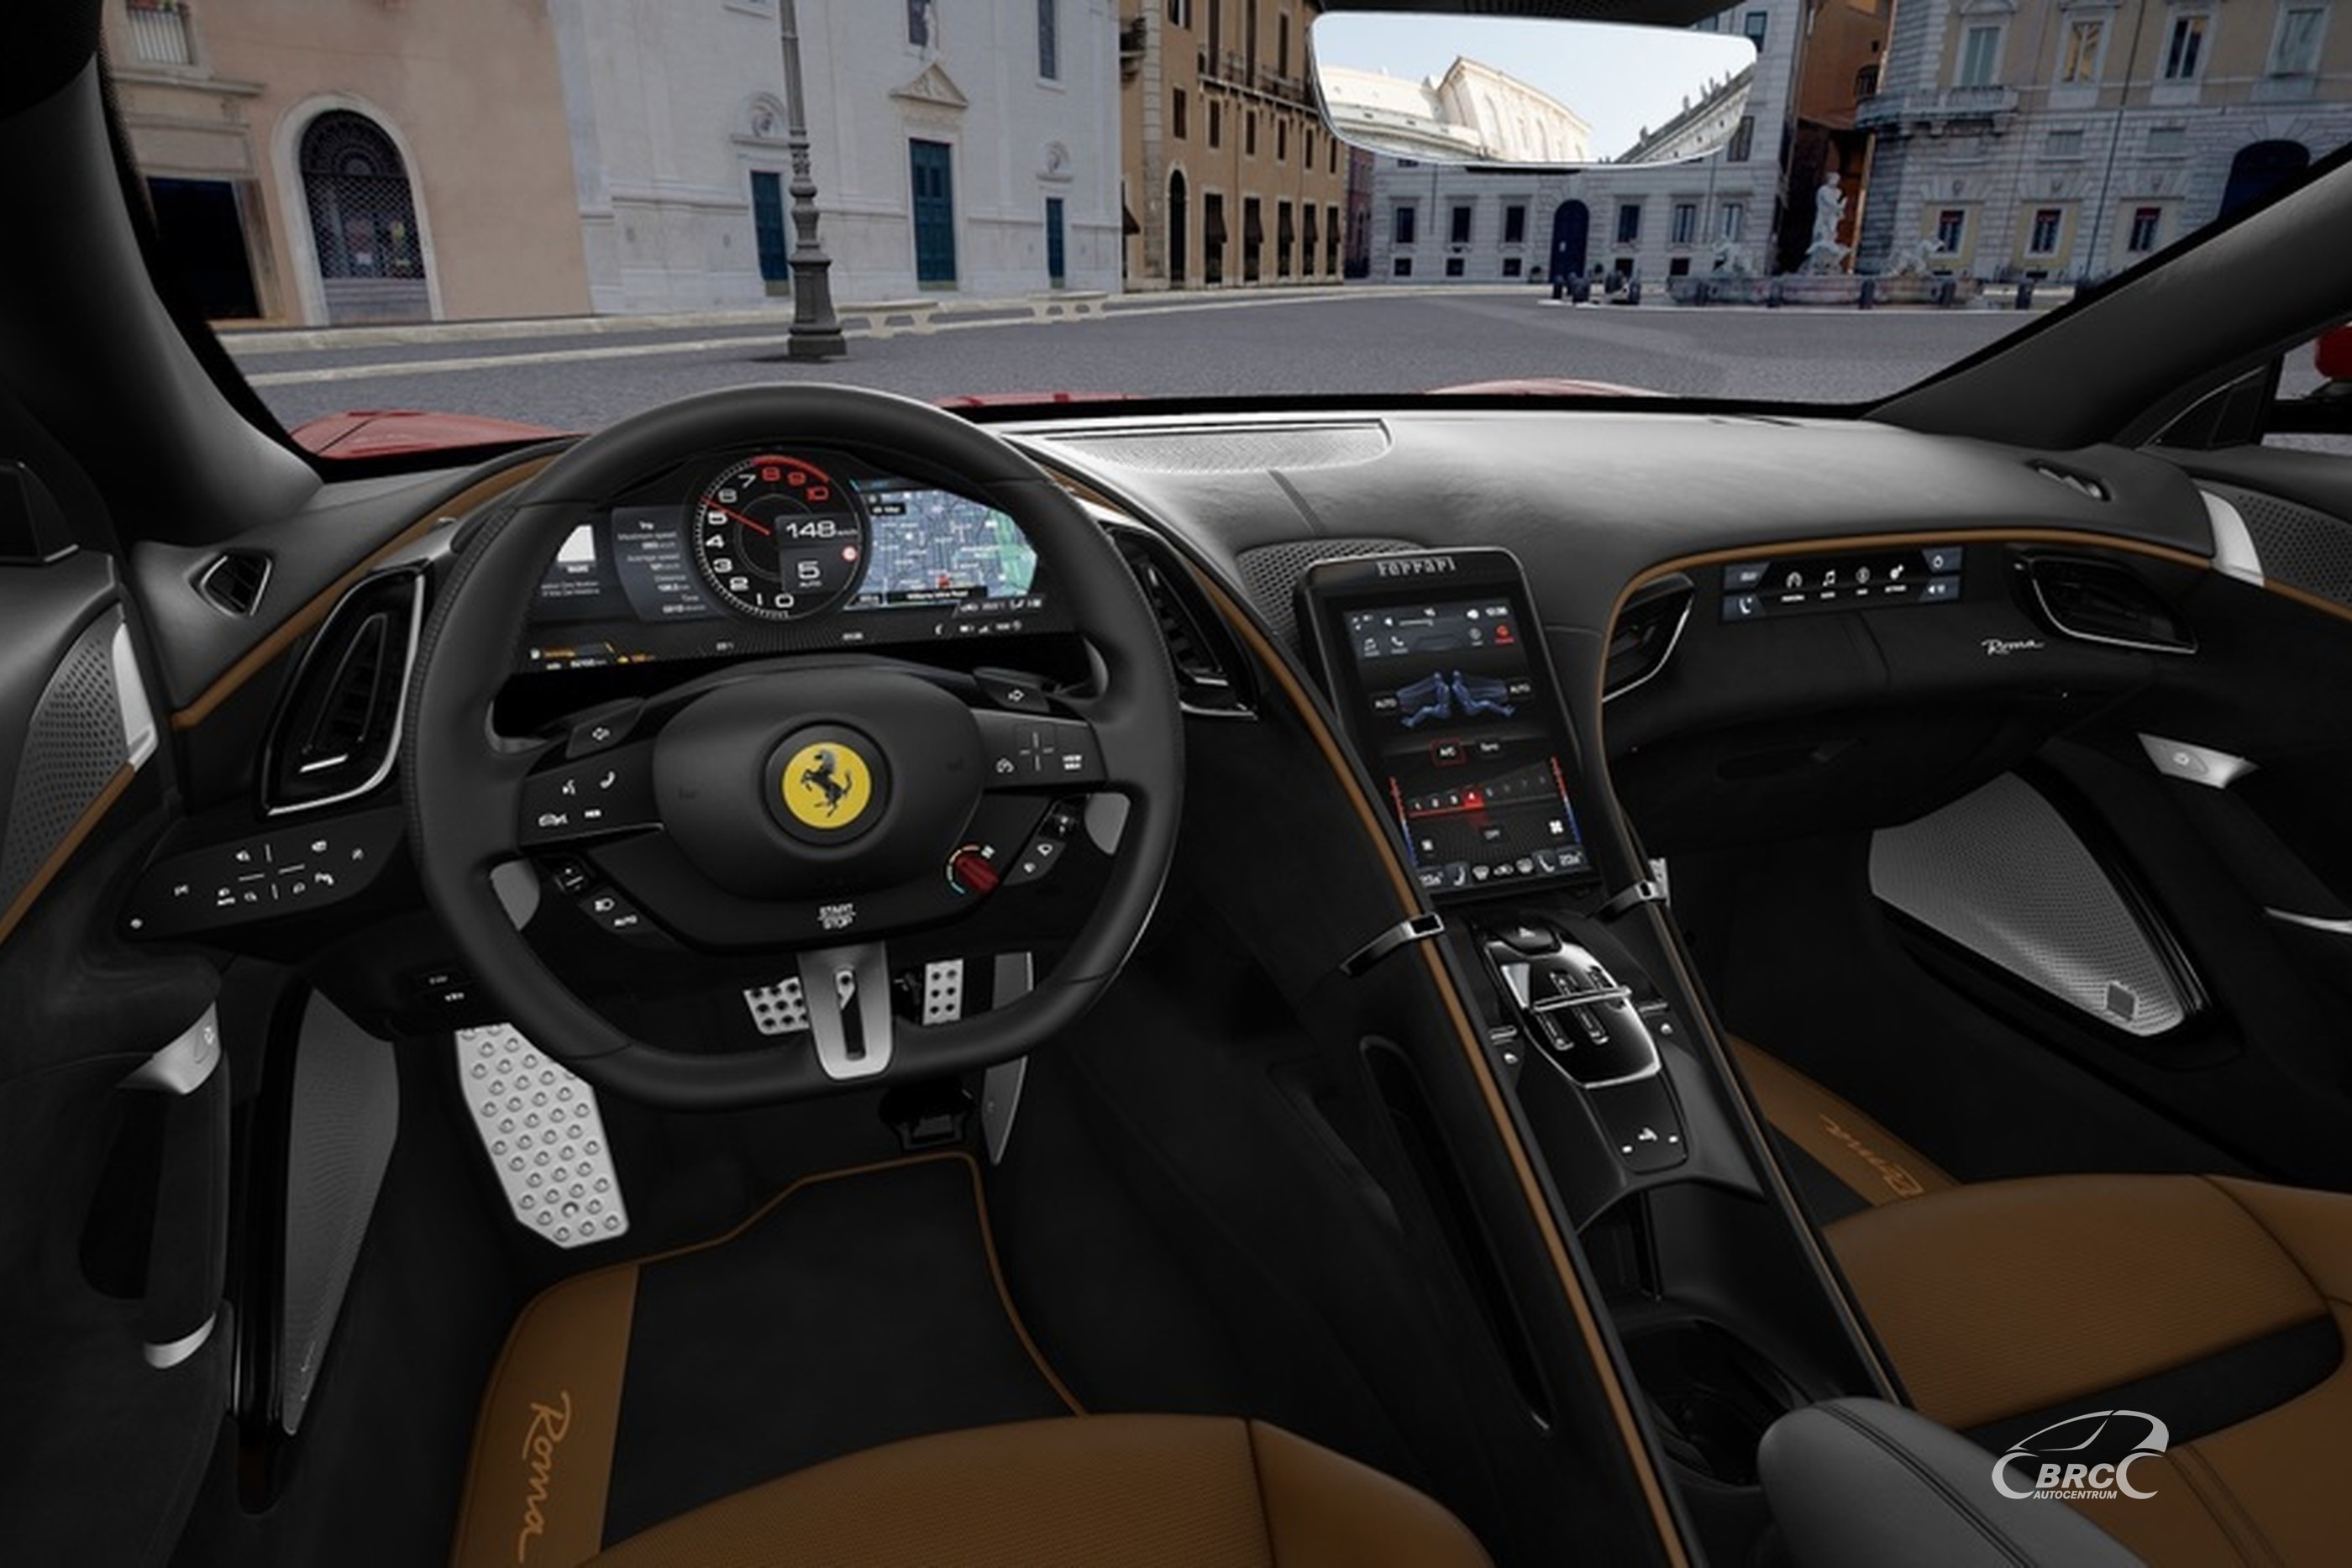 Ferrari Roma 